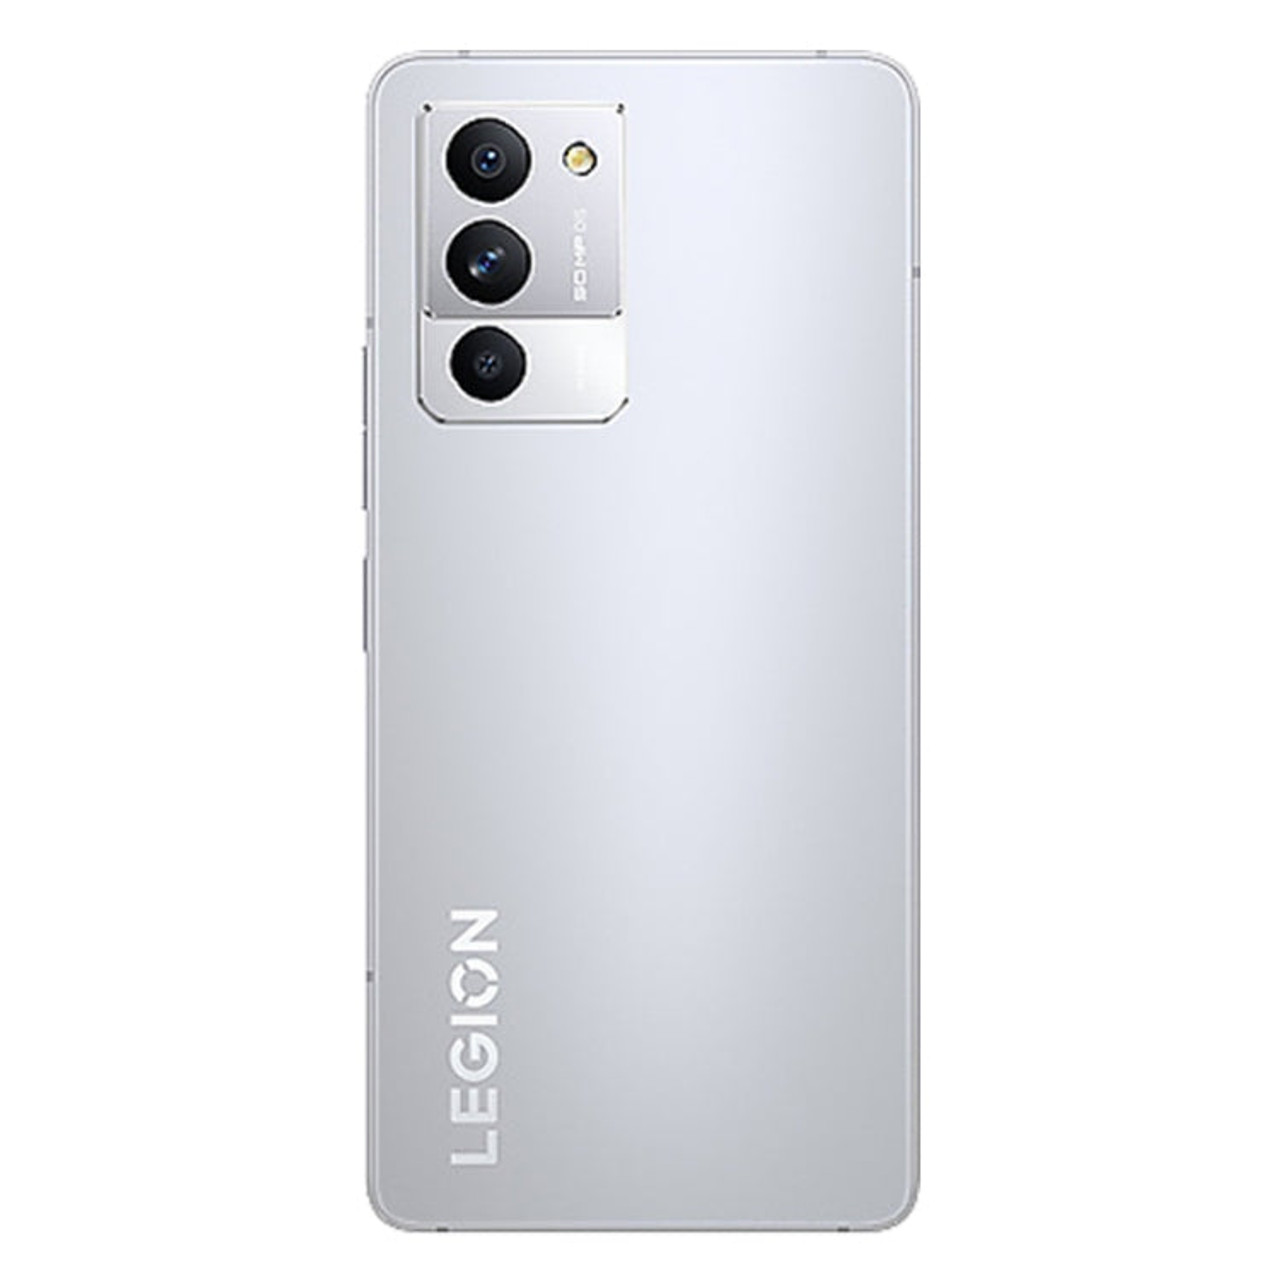 Lenovo LEGION Y70 Phone, 50MP Camera, 12GB+256GB.